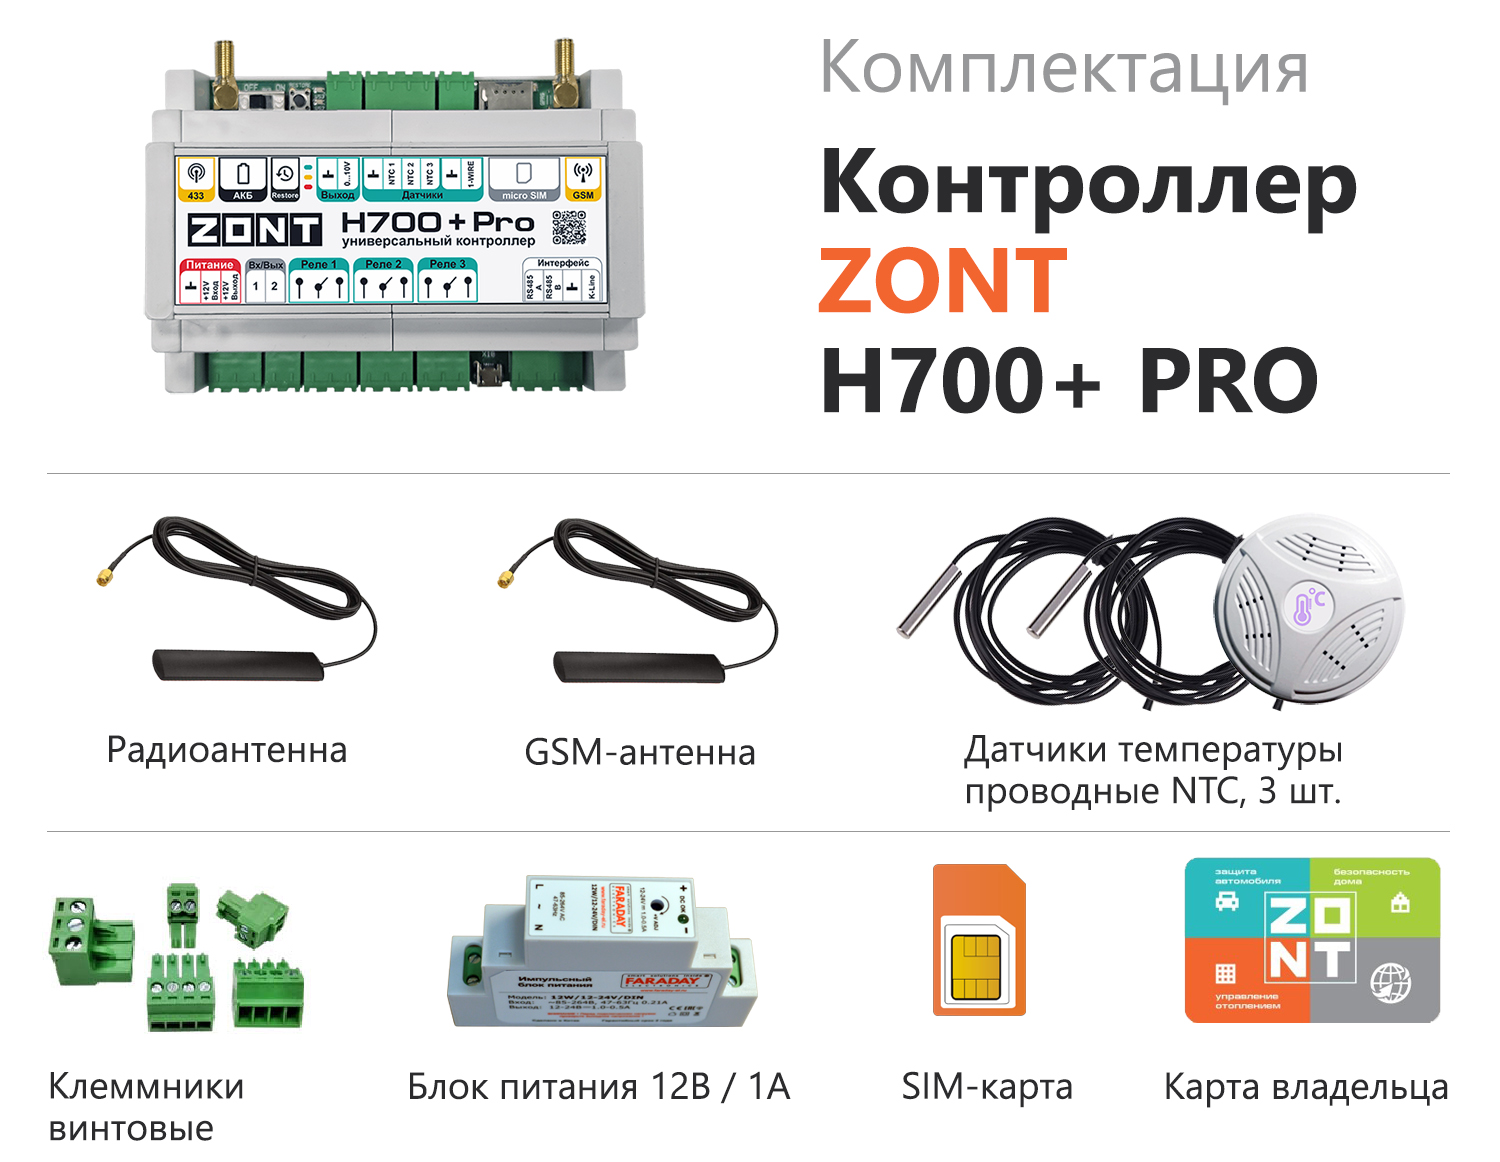 Детальное изображение товара "Универсальный GSM/Wi-Fi контроллер ZONT H700+ Pro" из каталога оборудования для видеонаблюдения